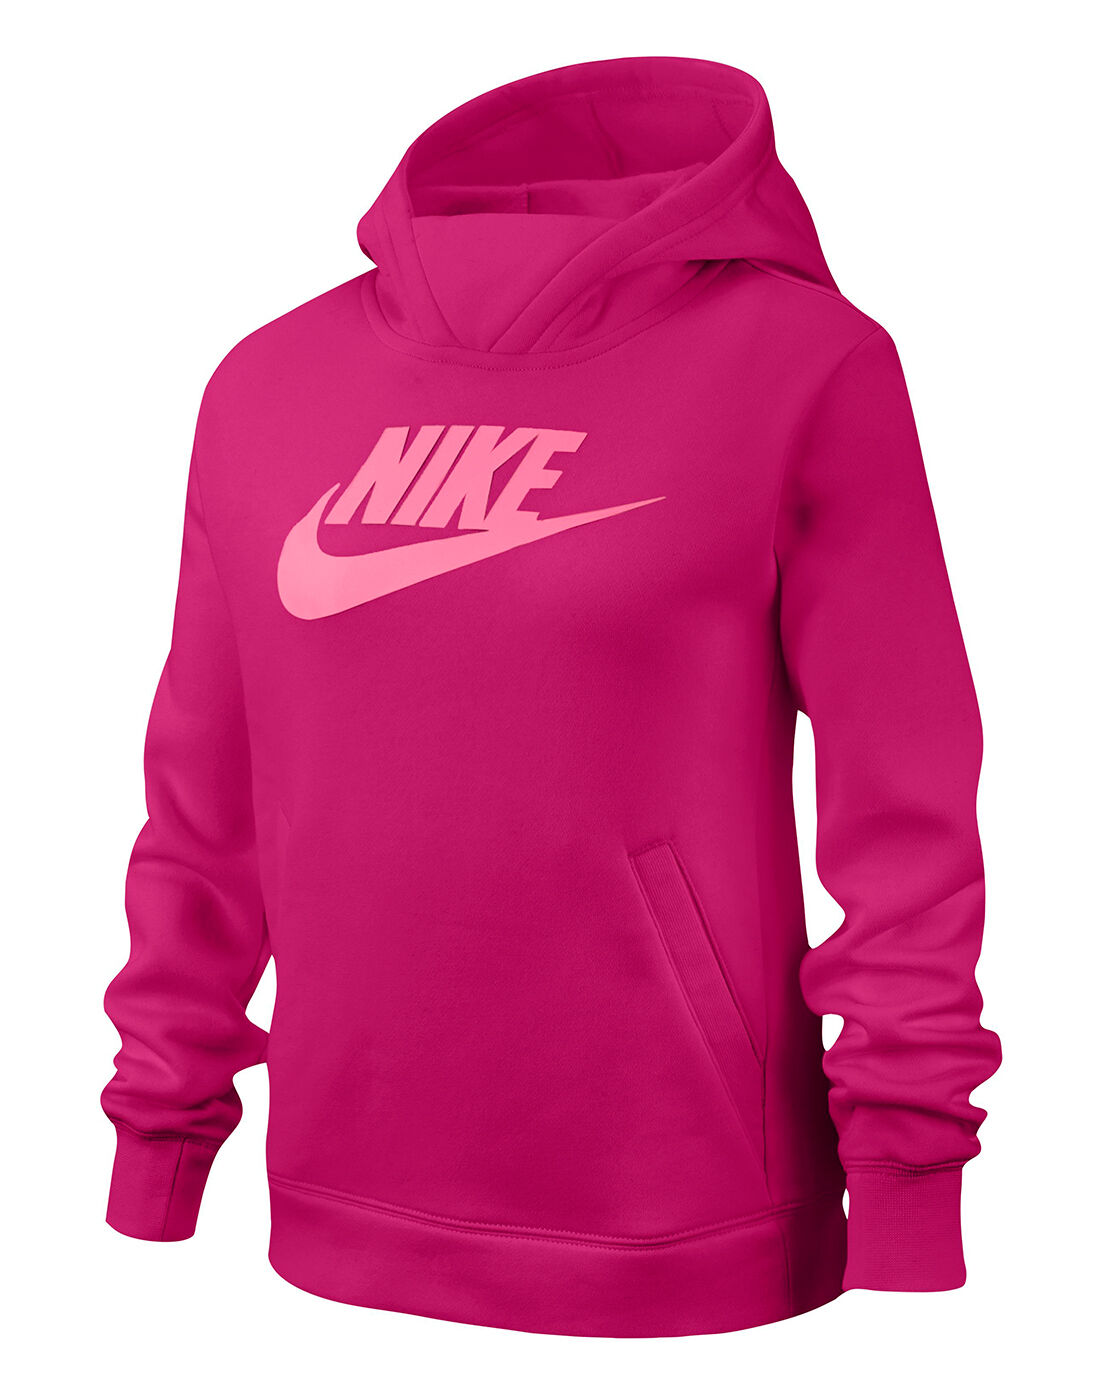 boys pink nike hoodie